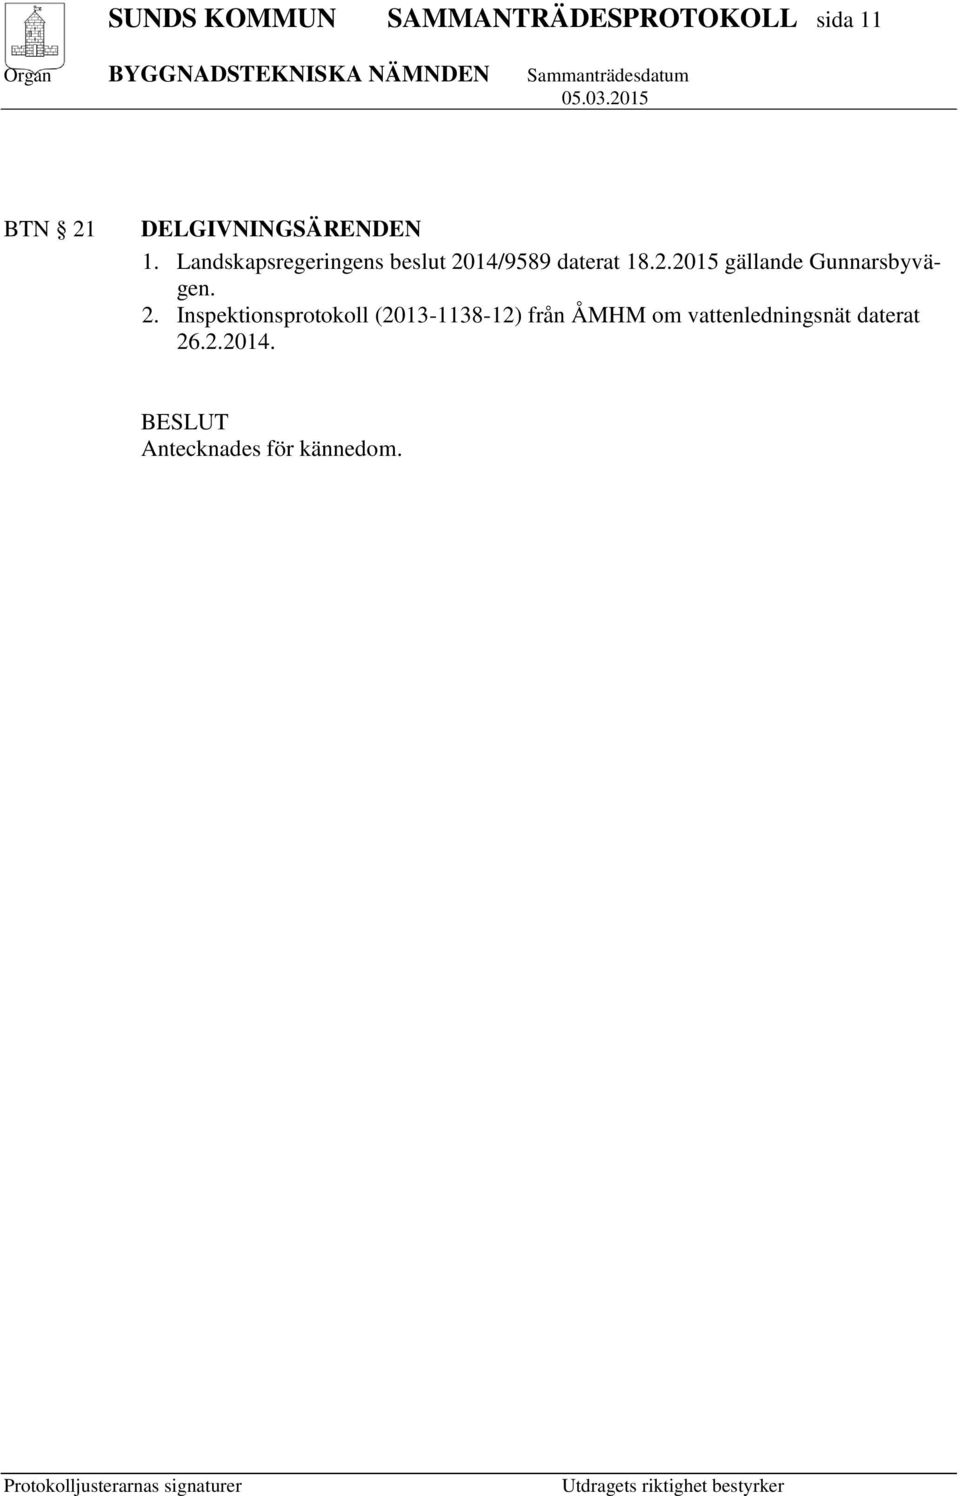 2. Inspektionsprotokoll (2013-1138-12) från ÅMHM om